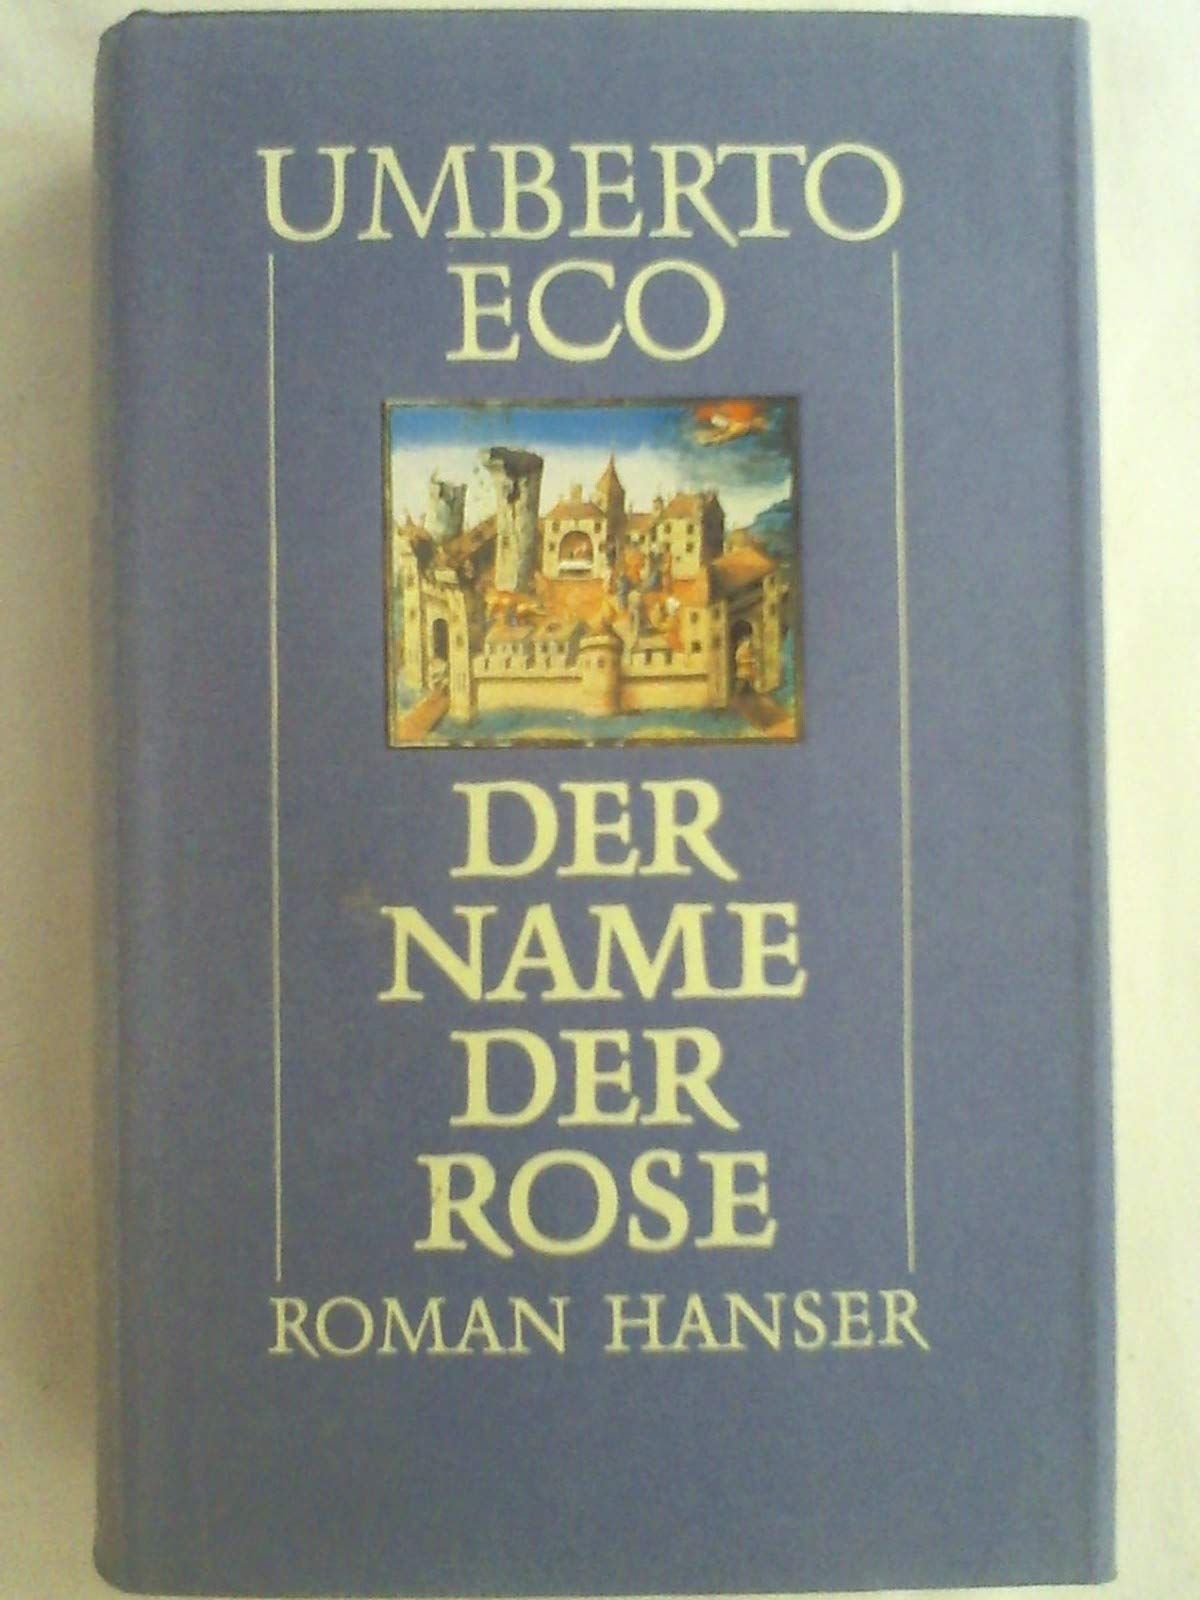 Der Name der Rose Jubiläumsausgabe (1. - 6. Auflage einschließlich) Luxusausgabe (7. - 9. Auflage einschließlich) - Eco, Umberto